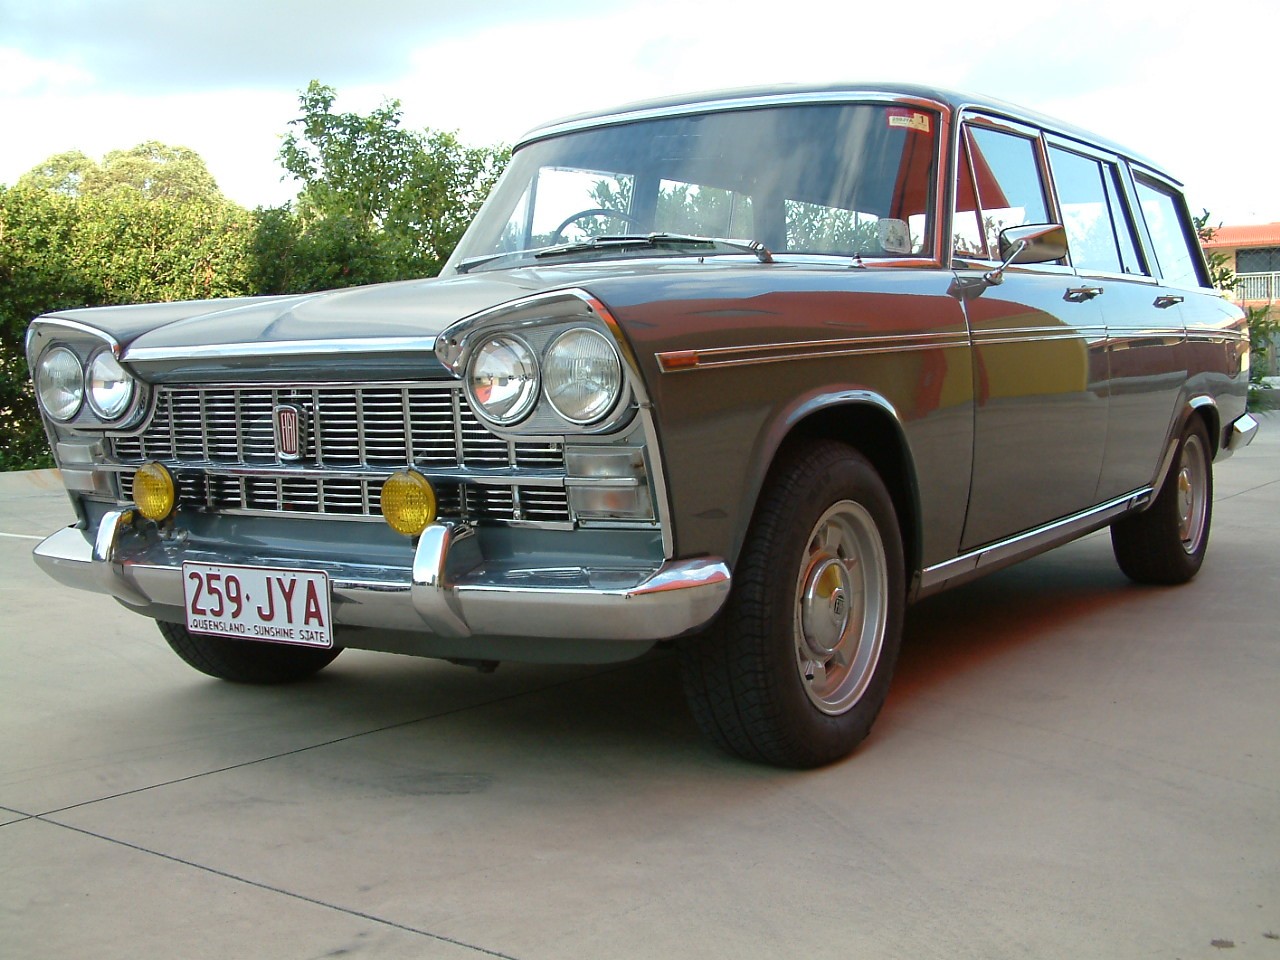 1966 Fiat 2300